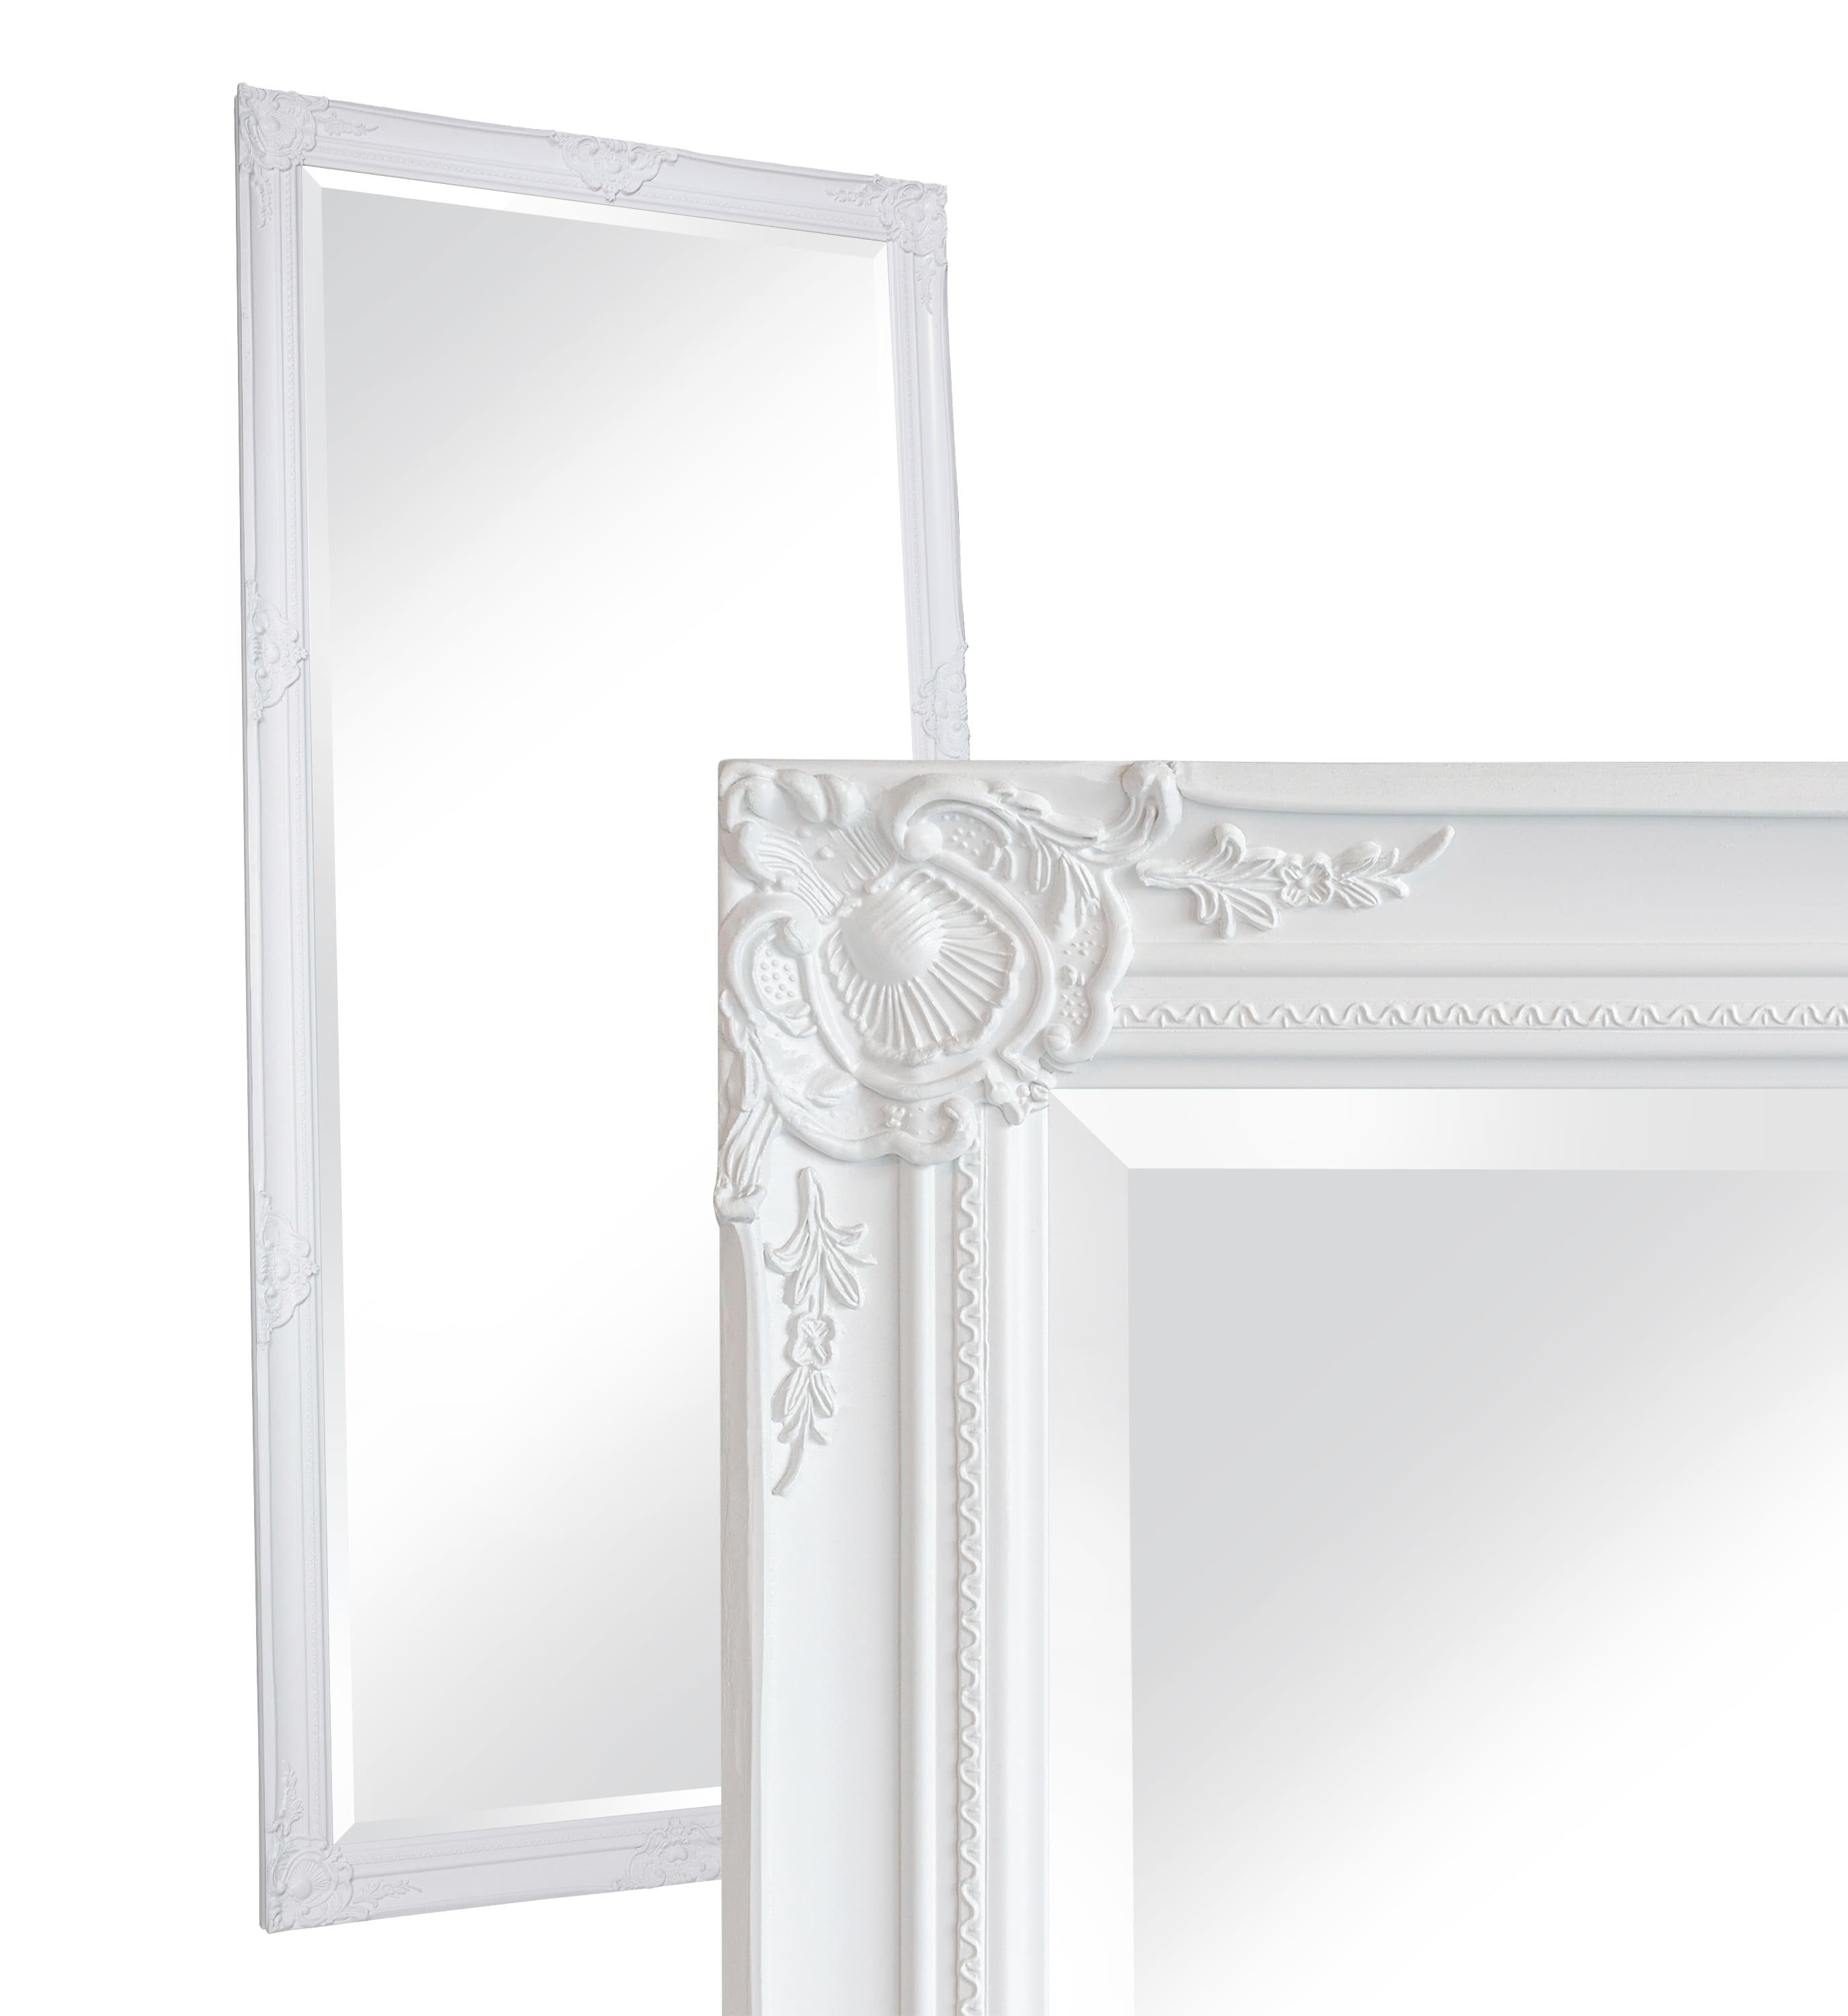 LC Home 200x100 Spiegel cm Spiegel Ganzkörperspiegel Barock Home XXL ca. LC Wandspiegel Antik-Stil Weiß